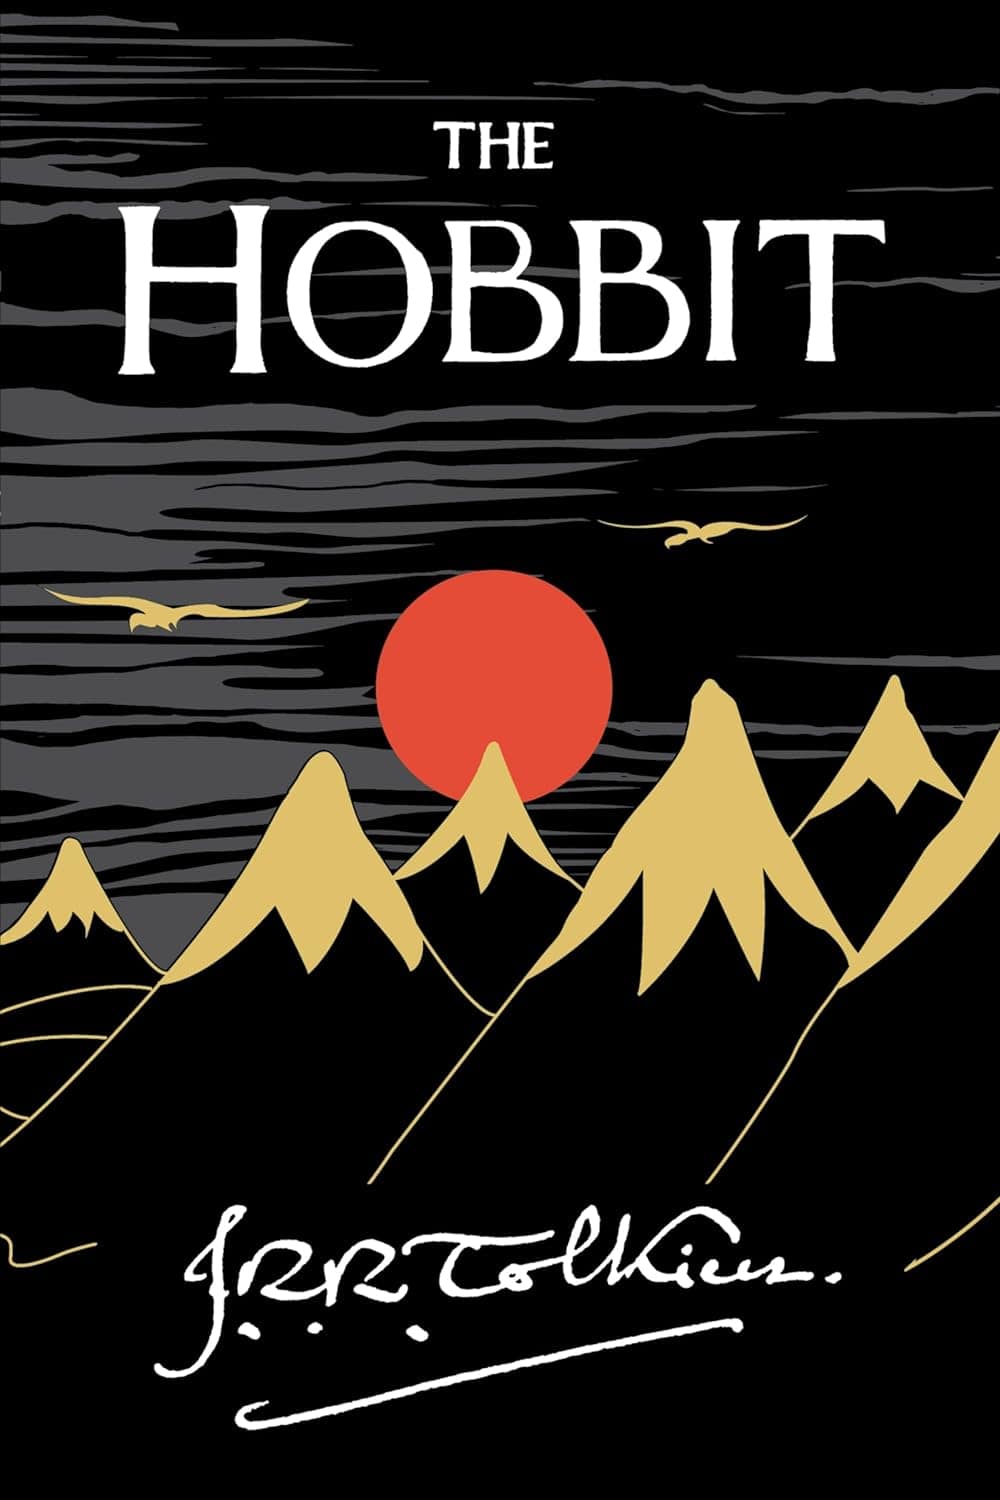 The Hobbit, by J.R.R. Tolkein